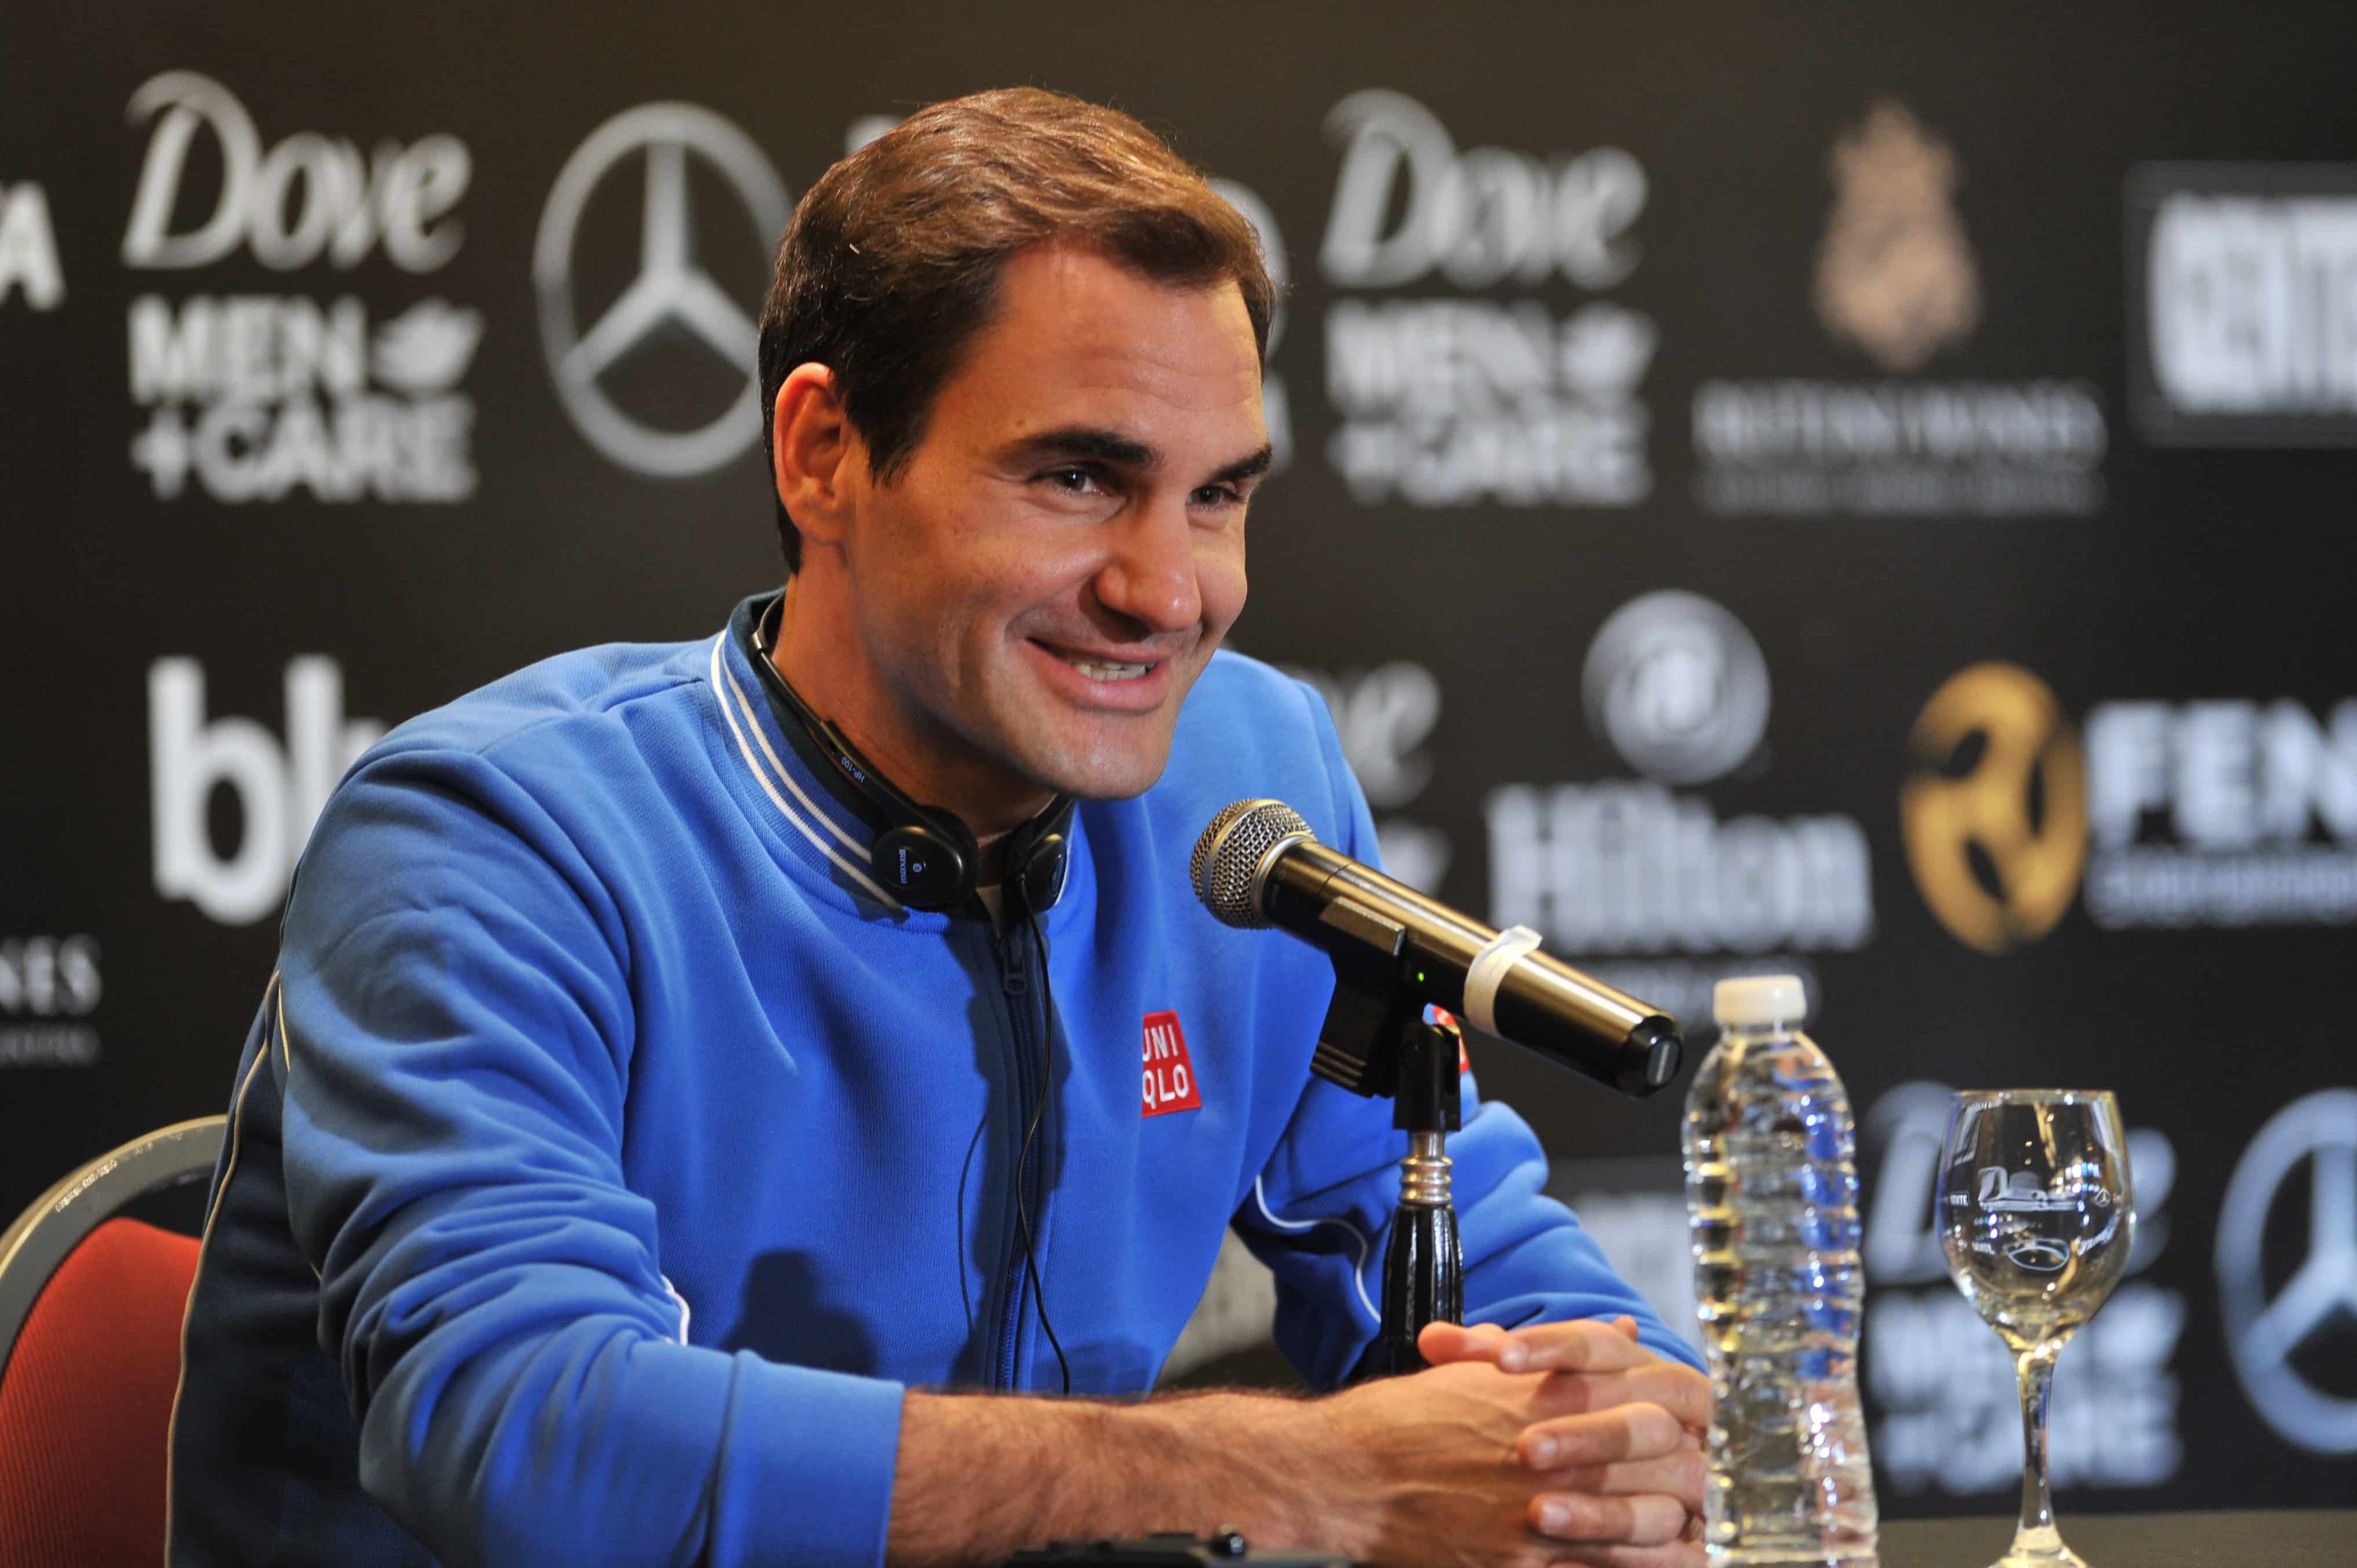 Rogers Federer: “Siempre busco mejorar y a los 38 años todavía no es tarde”